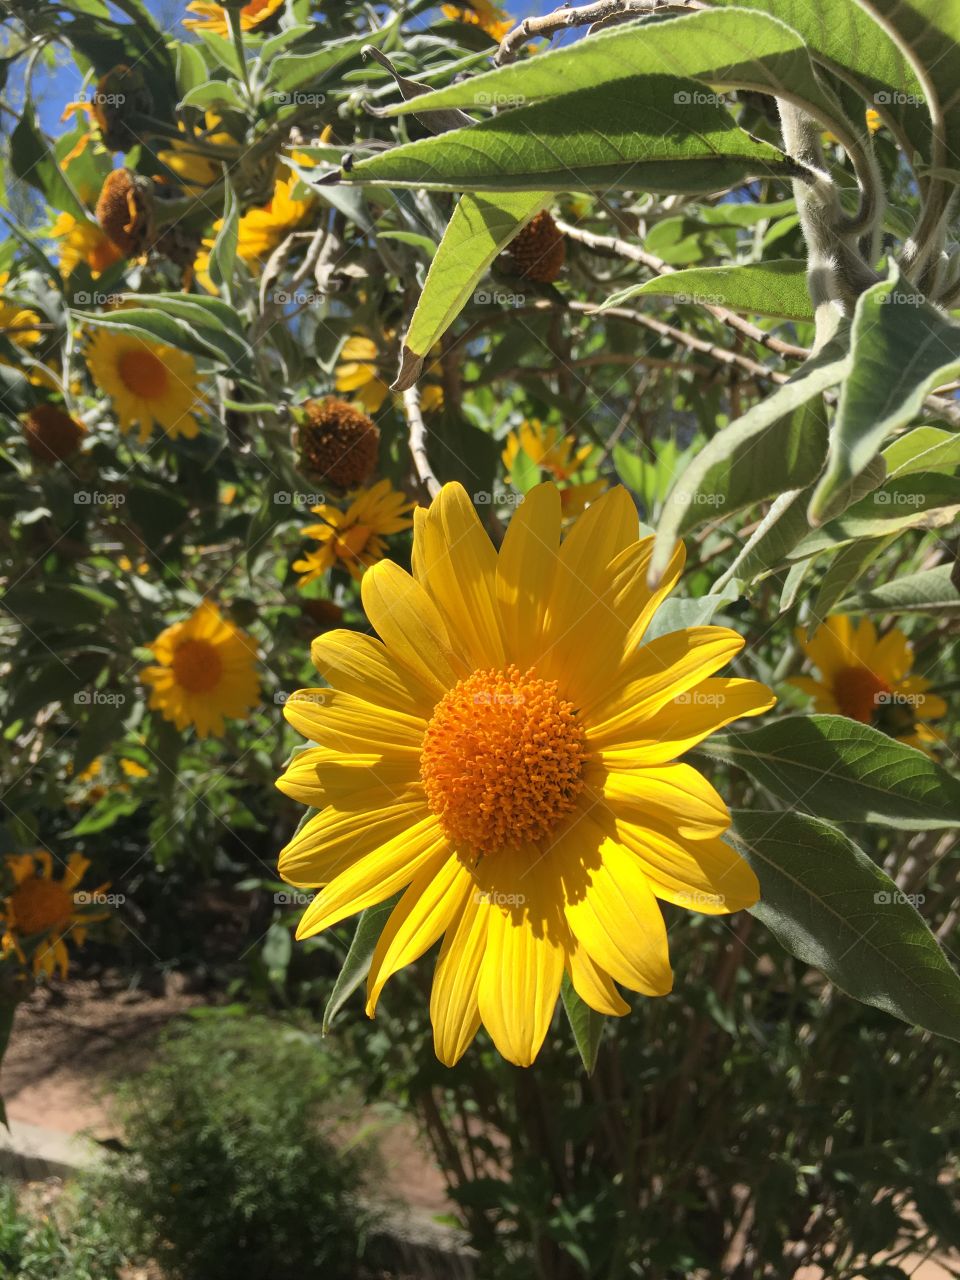 Happy Sunflowers